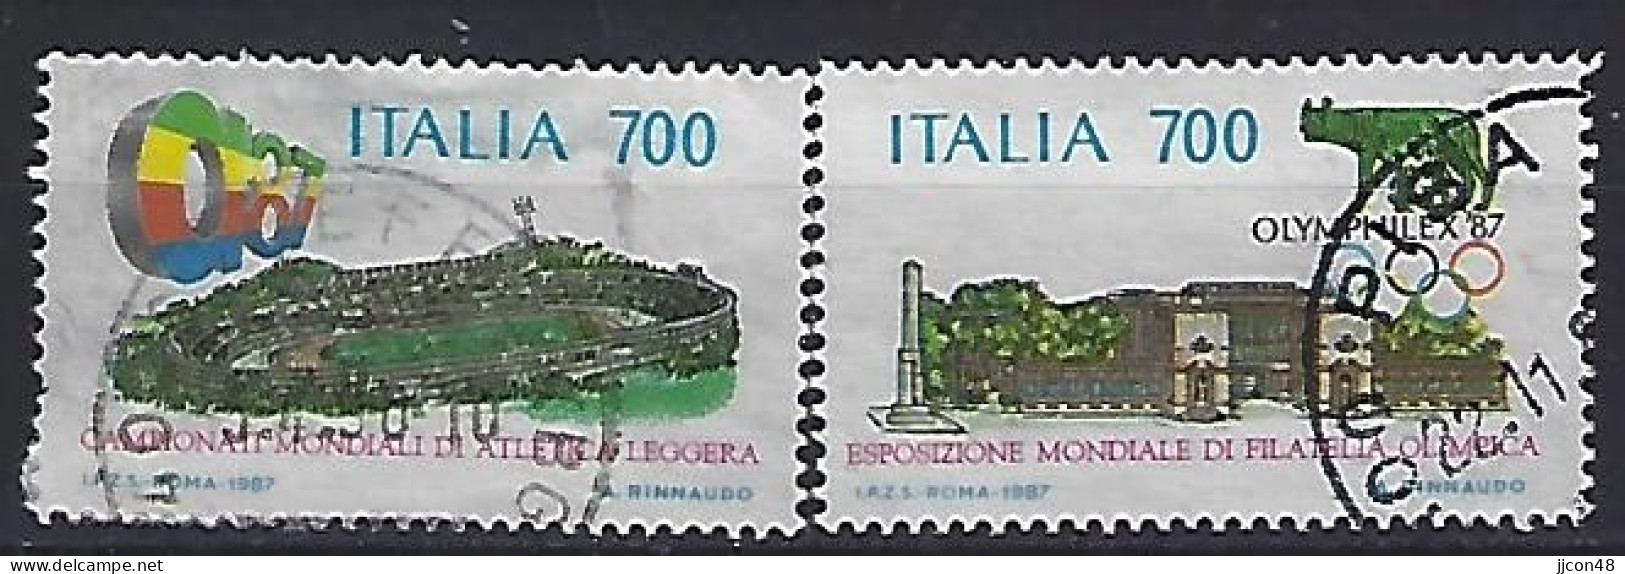 Italy 1987  Leichtathletik-Weltmeisterschaften + "OLYMPHILEX¬87"  (o) Mi.2019-2020 - 1981-90: Gebraucht